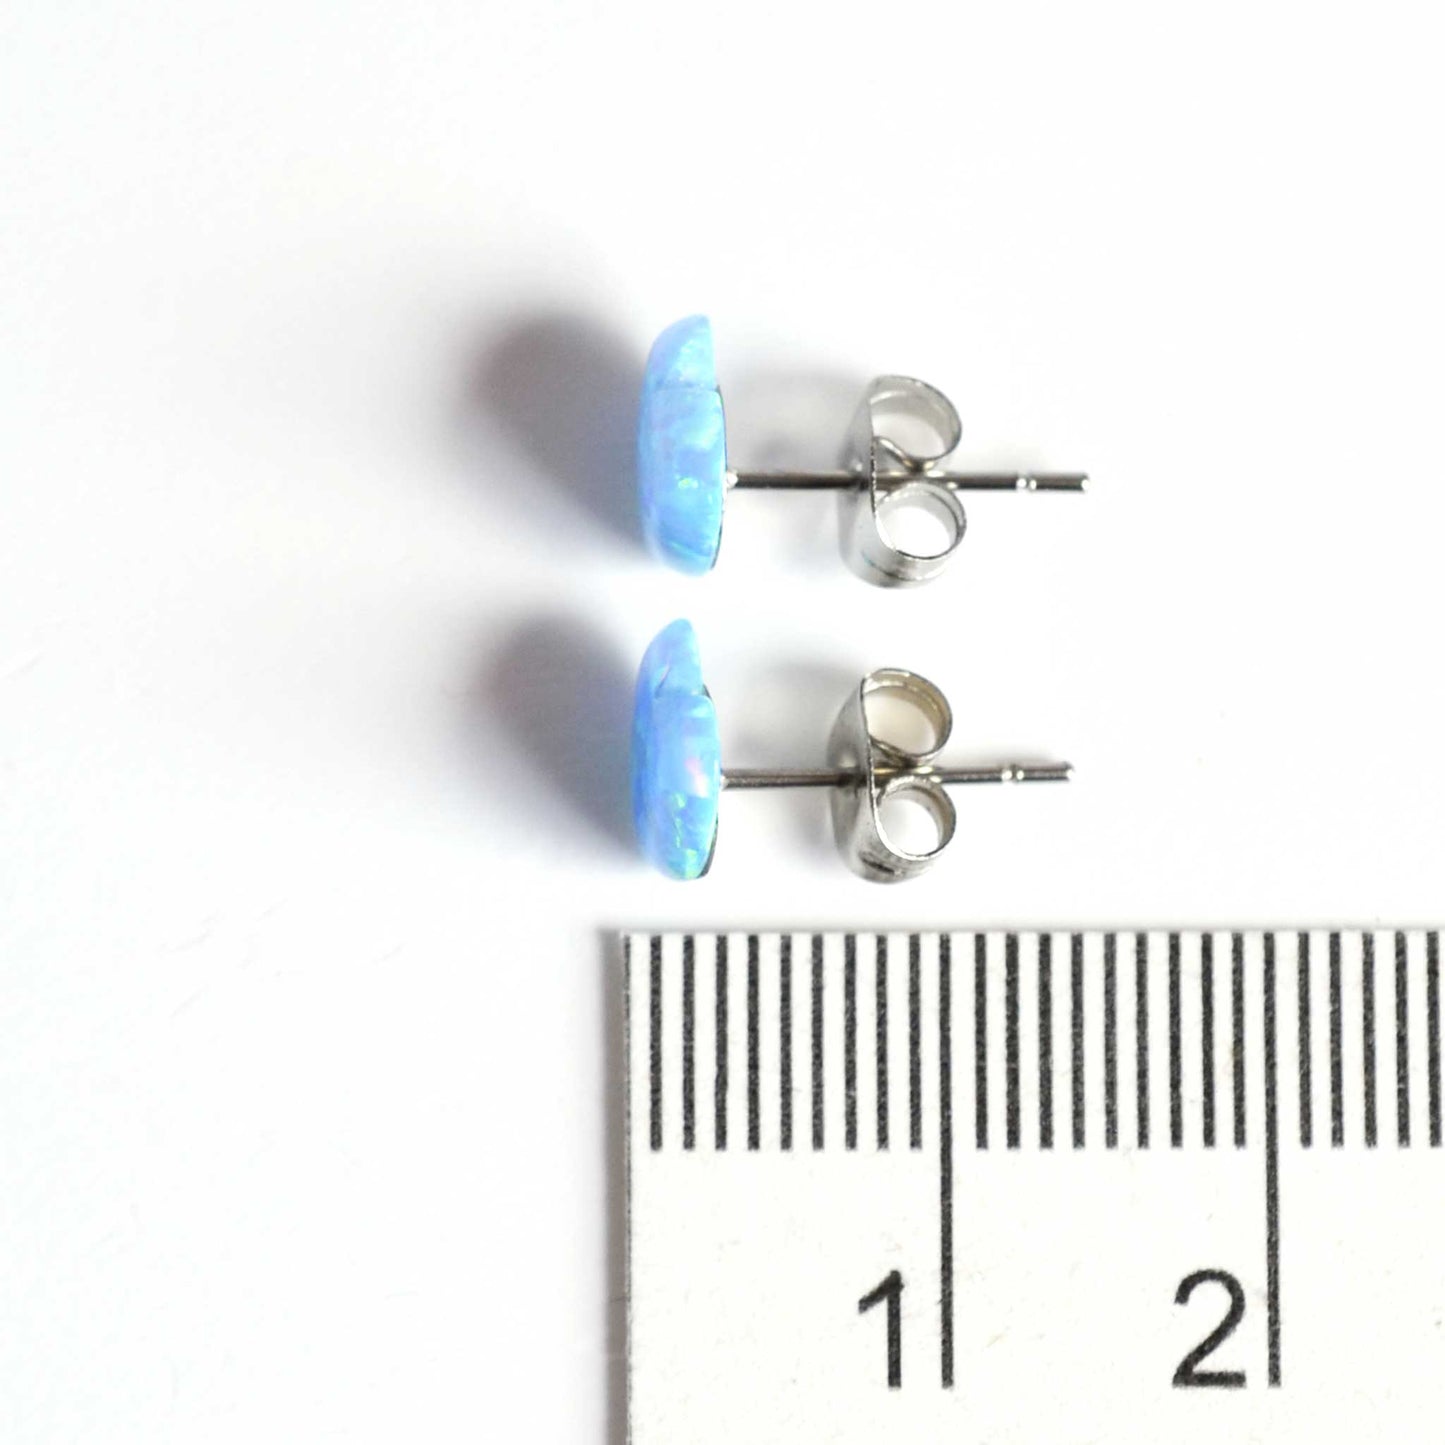 8mm blue opal heart stud earrings next to ruler